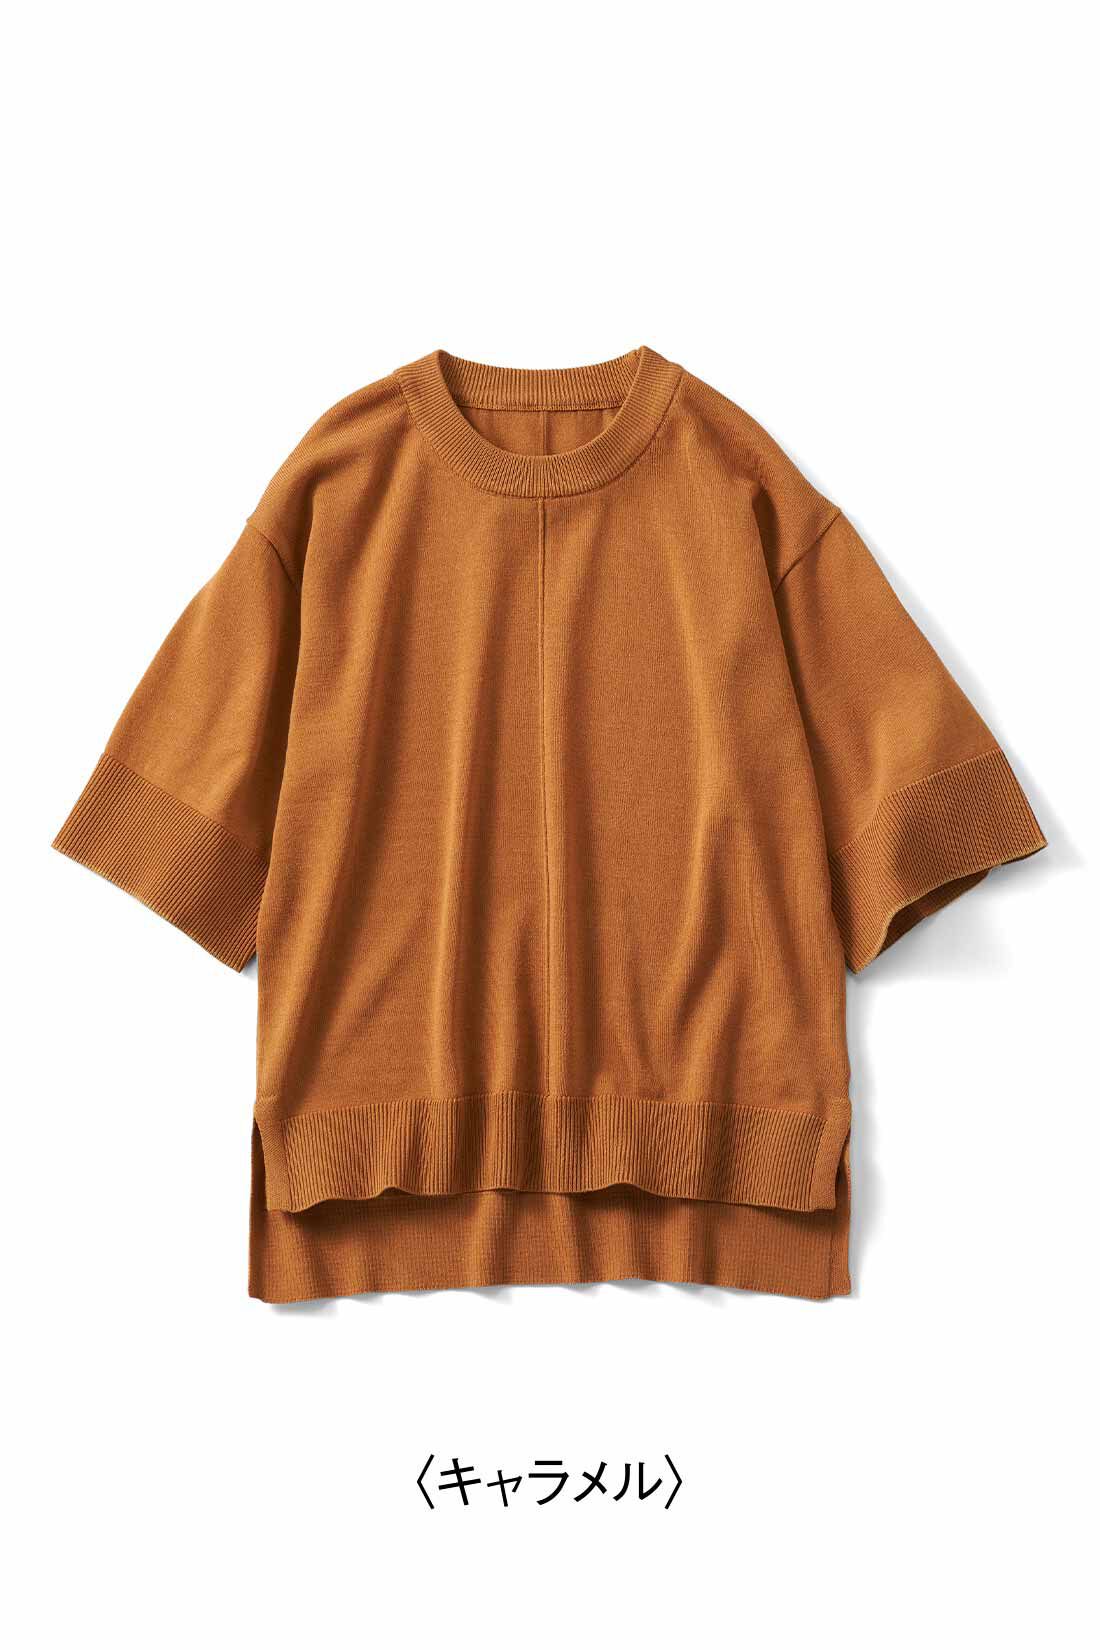 Real Stock|リブ イン コンフォート　Tシャツ感覚で着れちゃう きれいめニットトップス〈キャラメル〉